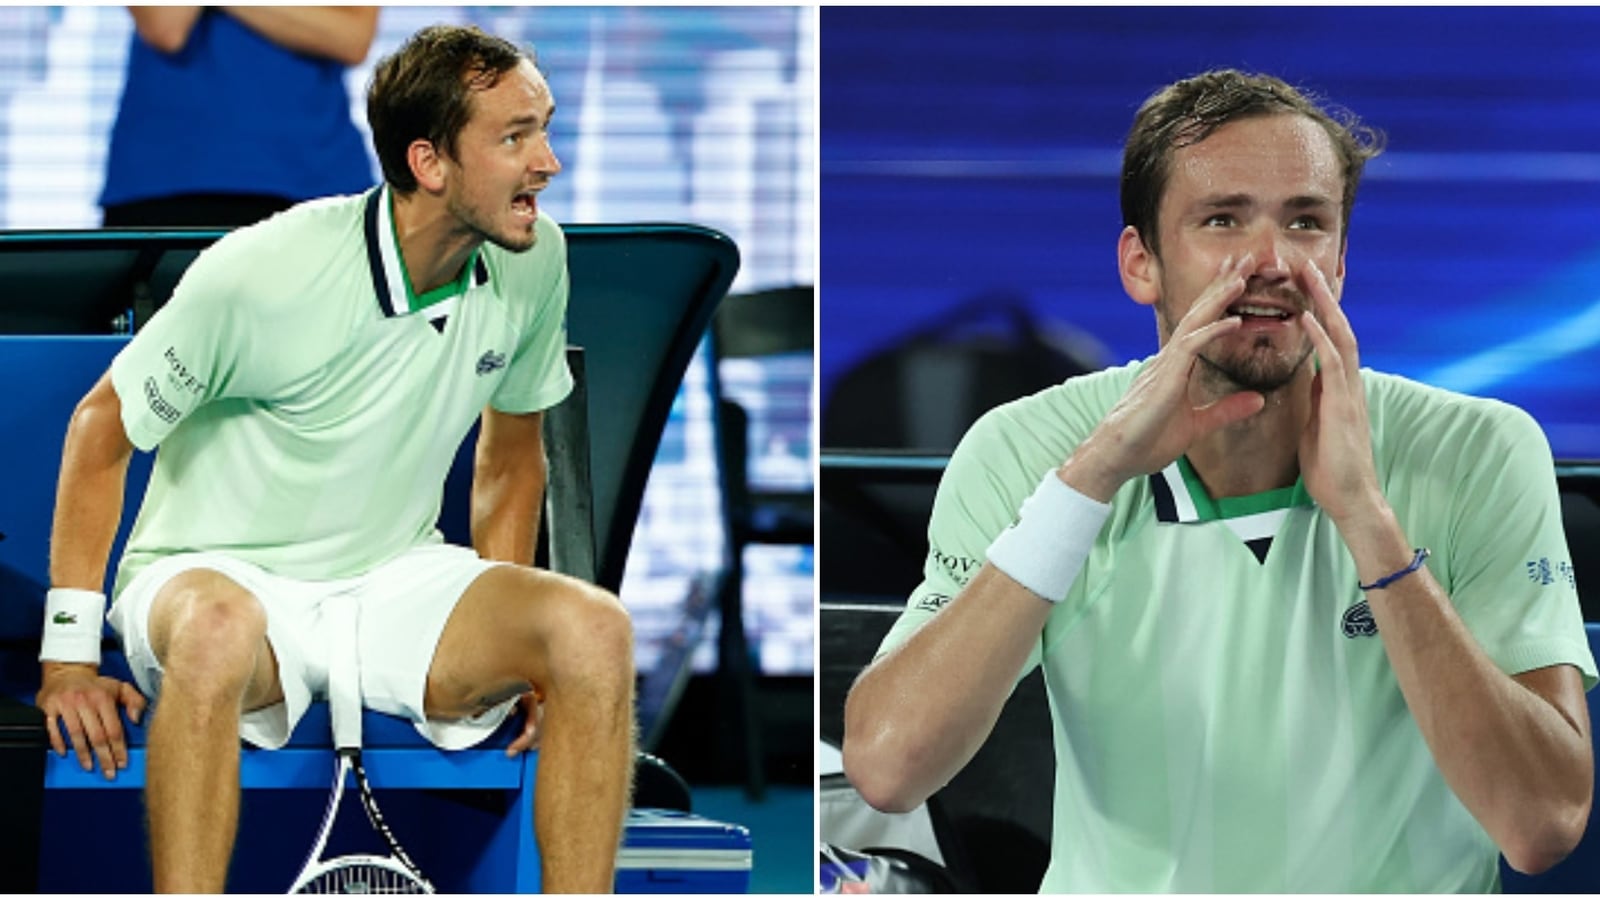 Australian Open Medvedev, Tsitsipas both fined after high-octane semi-final Tennis News